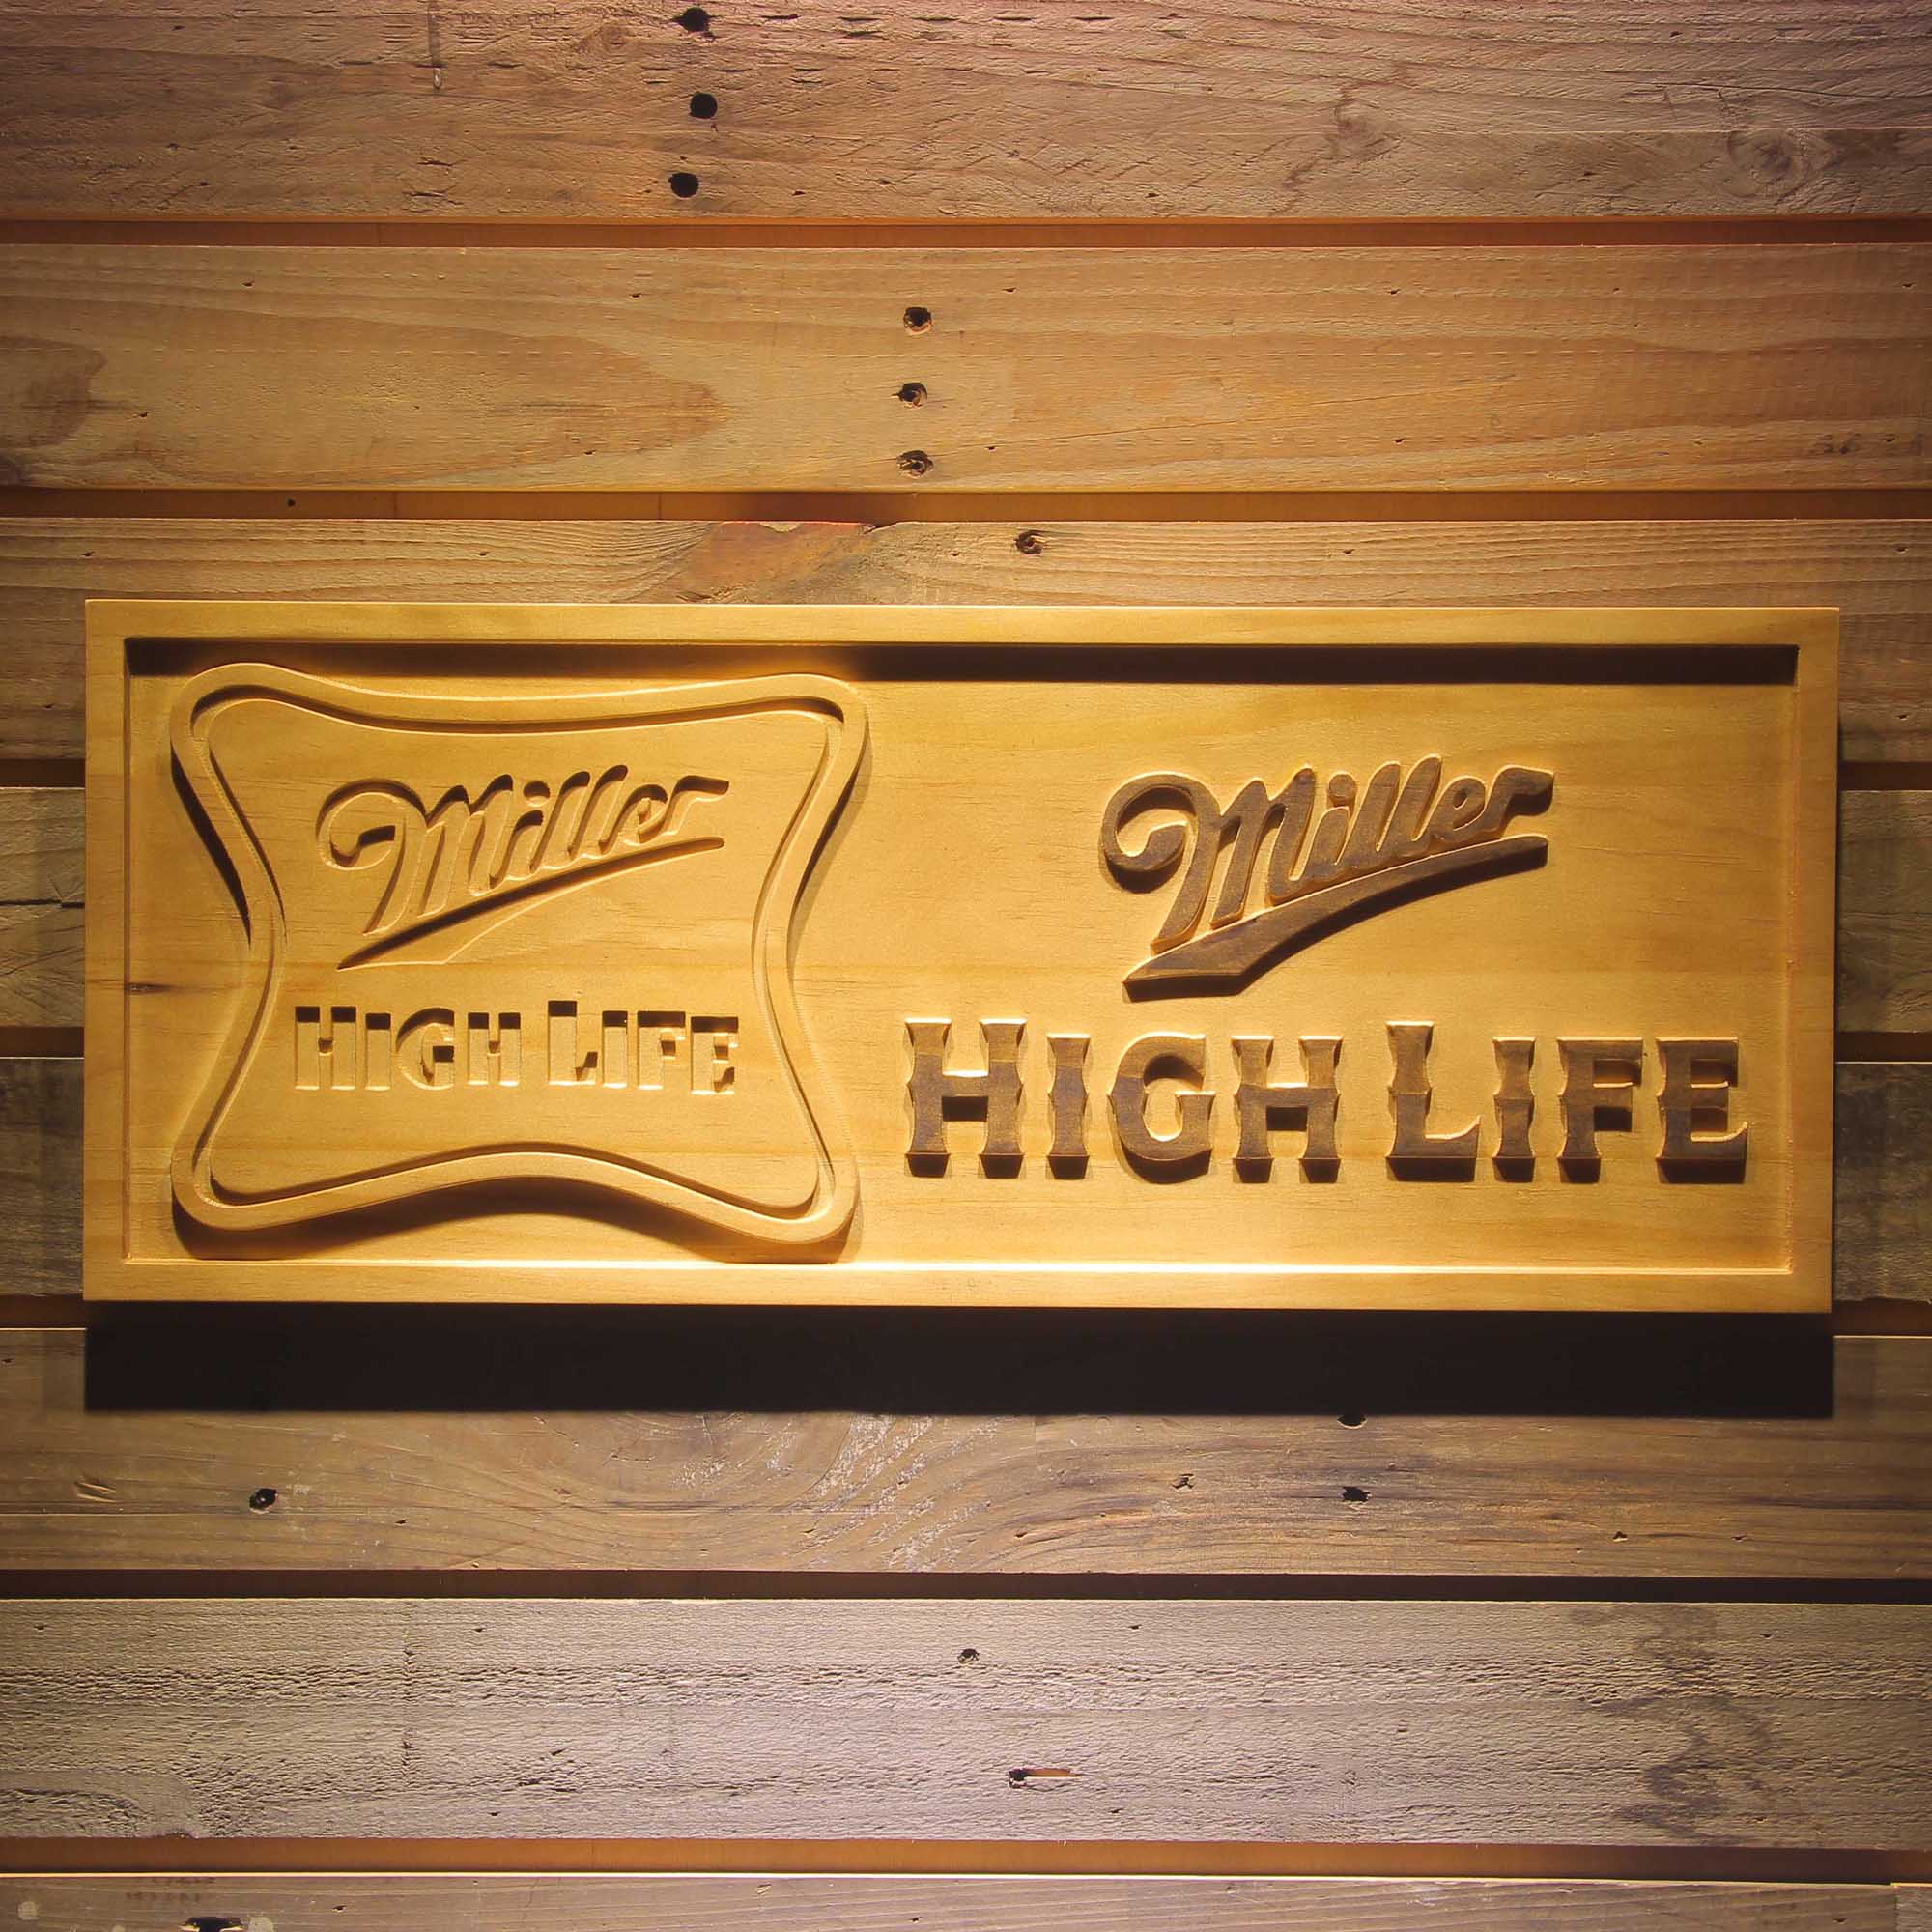 Miller,Miller High Life 3D Solid Wooden Craving Sign